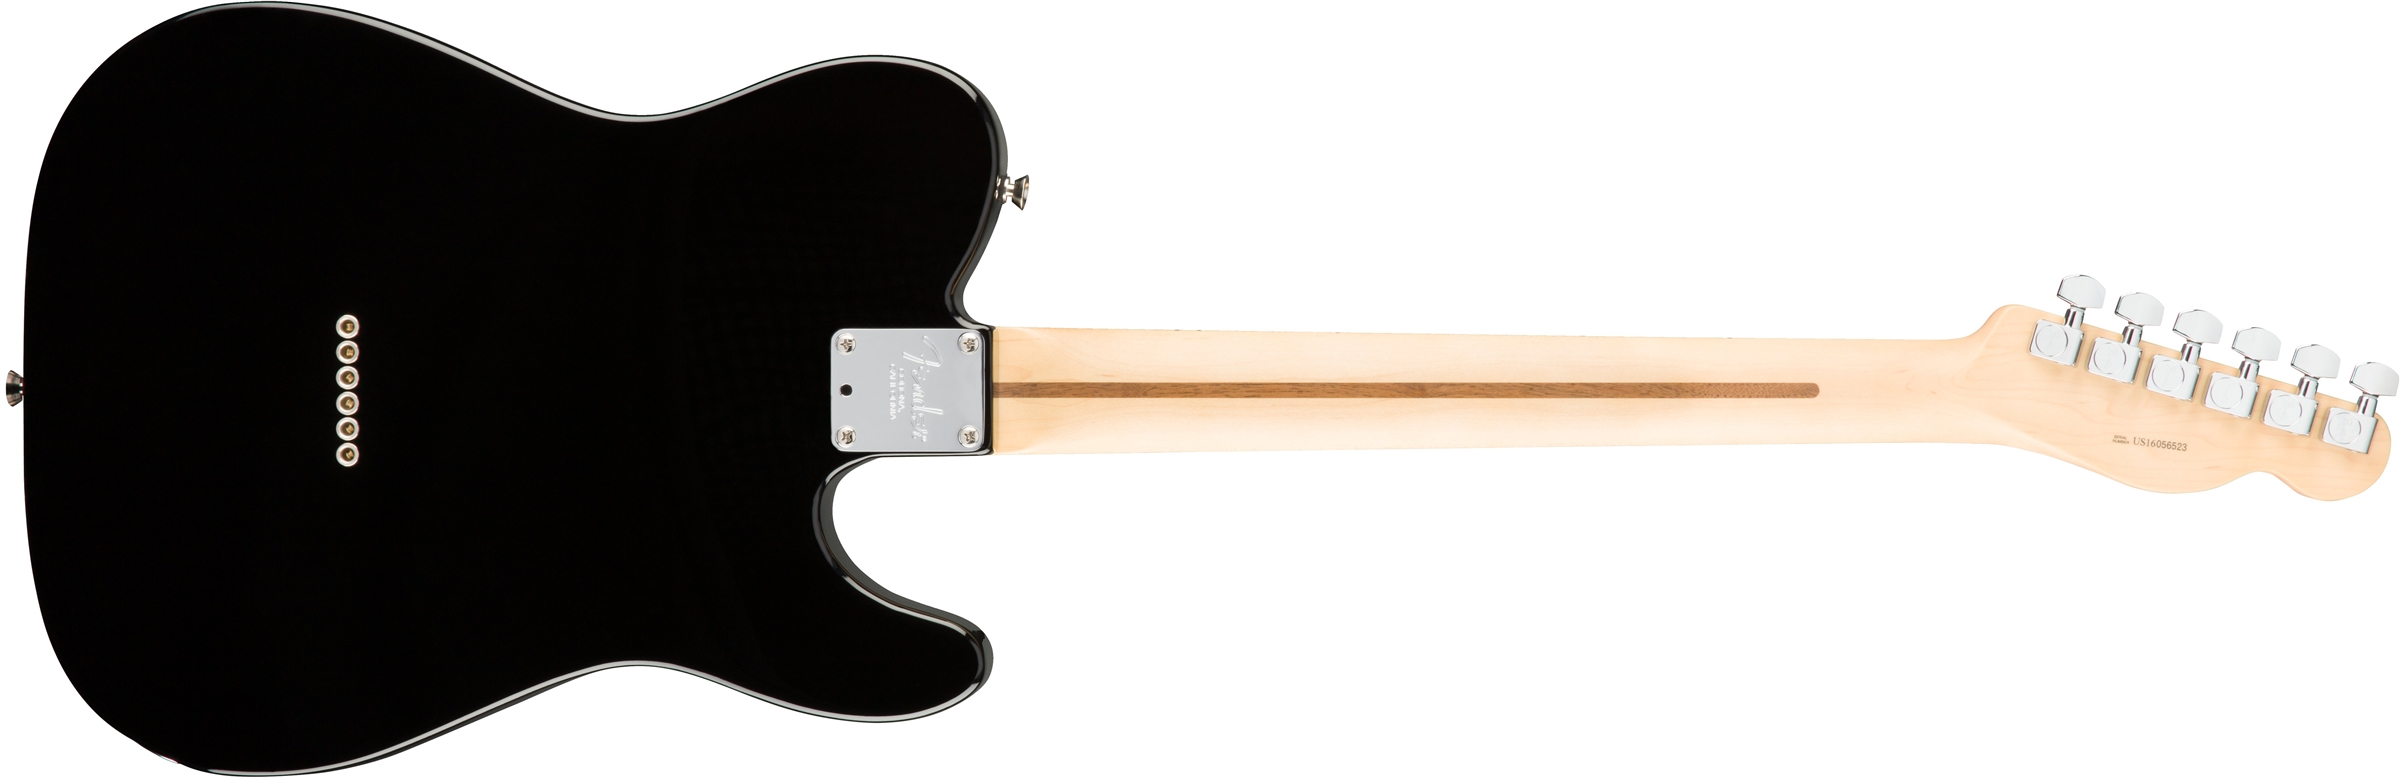 Fender Tele American Professional Lh Usa Gaucher 2s Mn - Black - E-Gitarre für Linkshänder - Variation 1